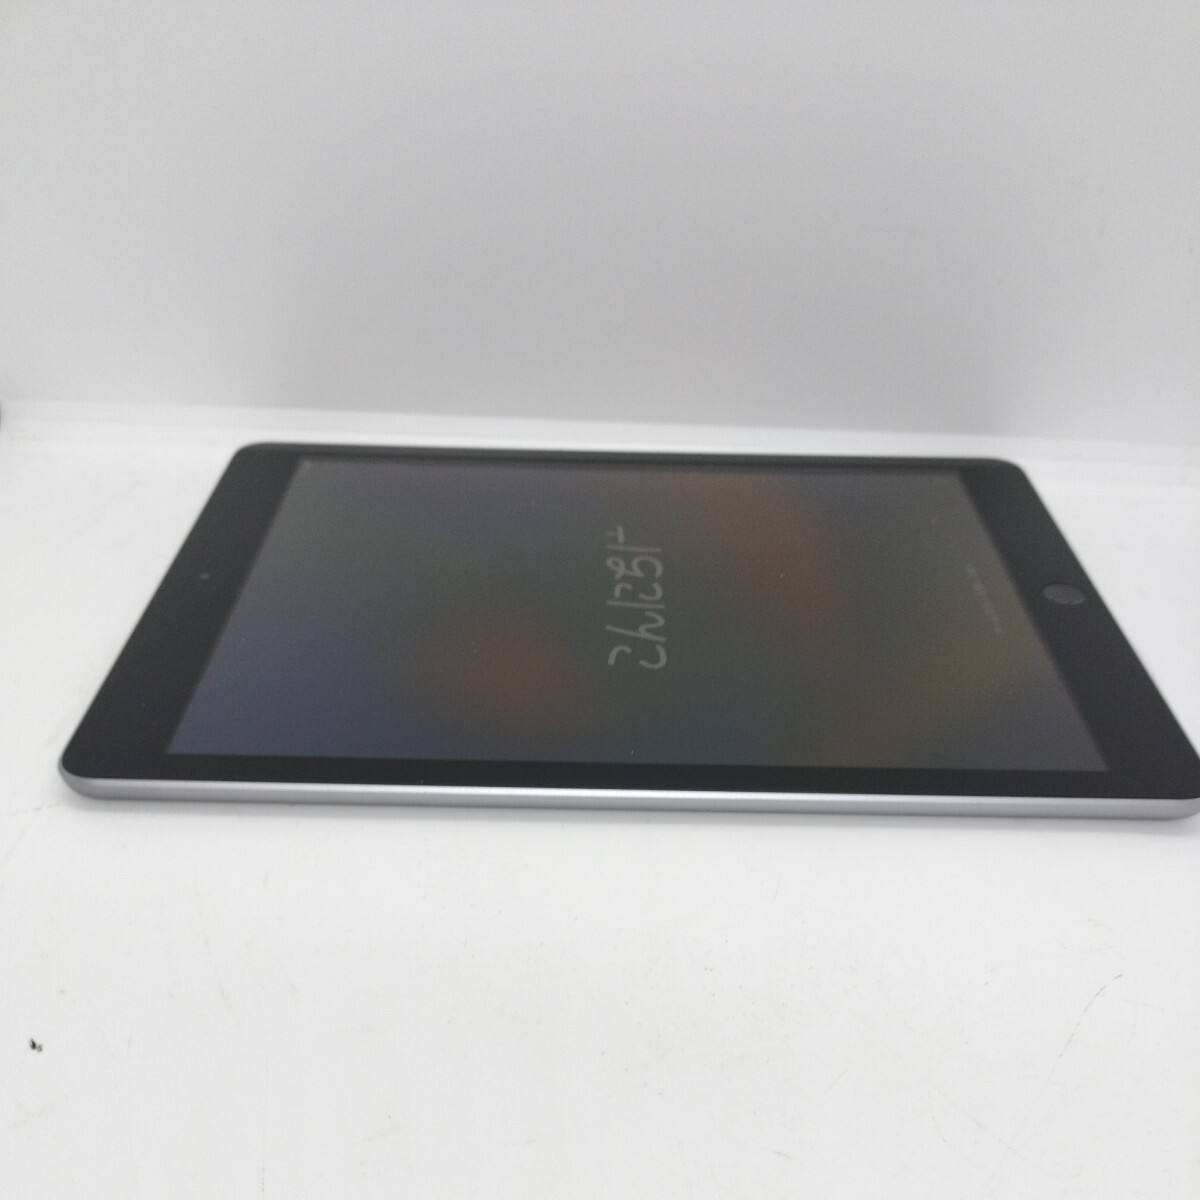  управление :RA-2267/ исправно работающий товар рабочее состояние подтверждено / iPad no. 6 поколение a1893 32GB Wi-Fi модель 